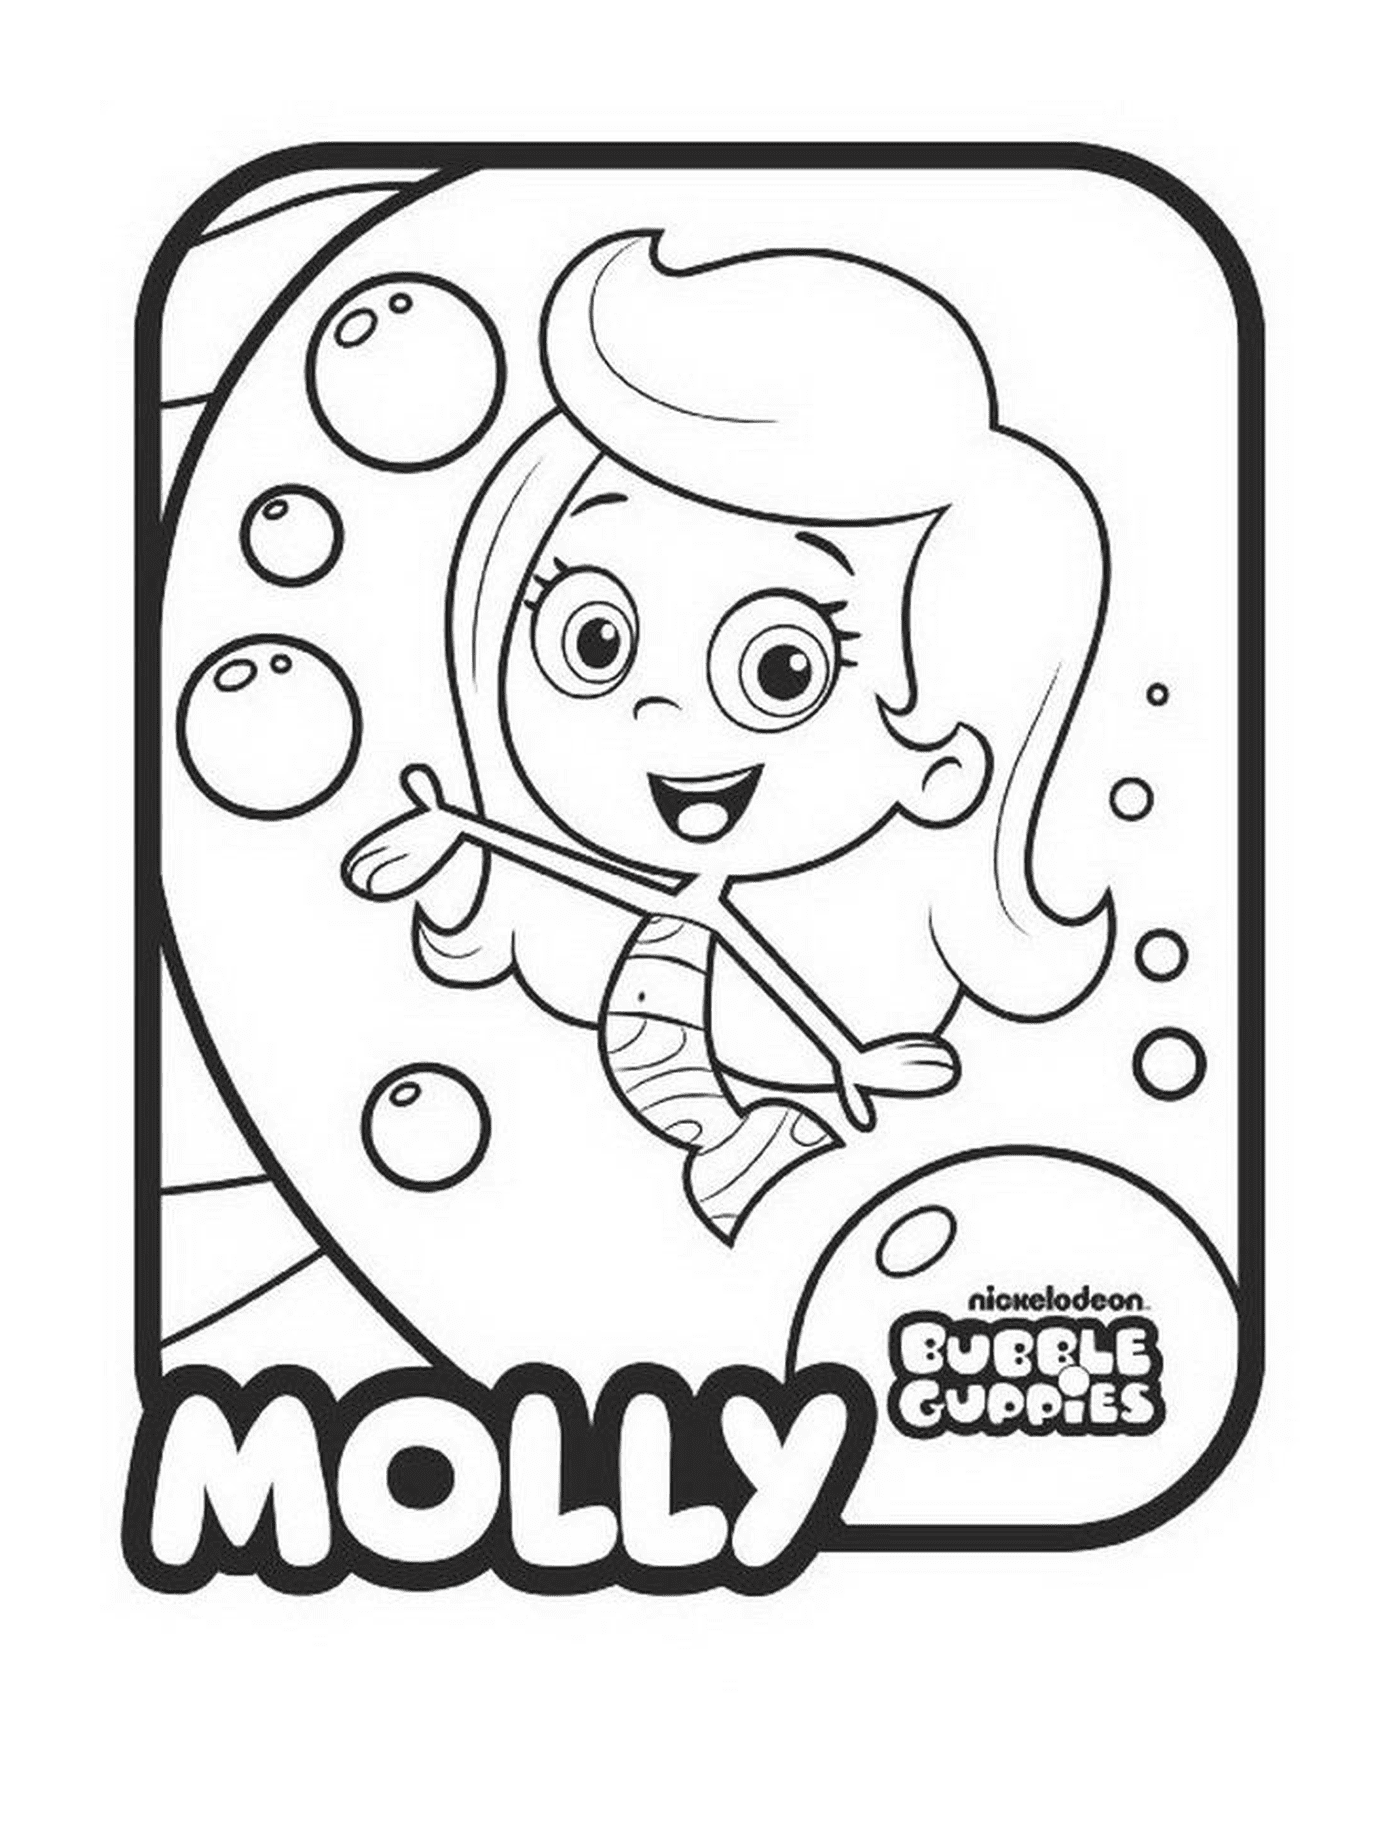  Molly de los Bubble Guppies 